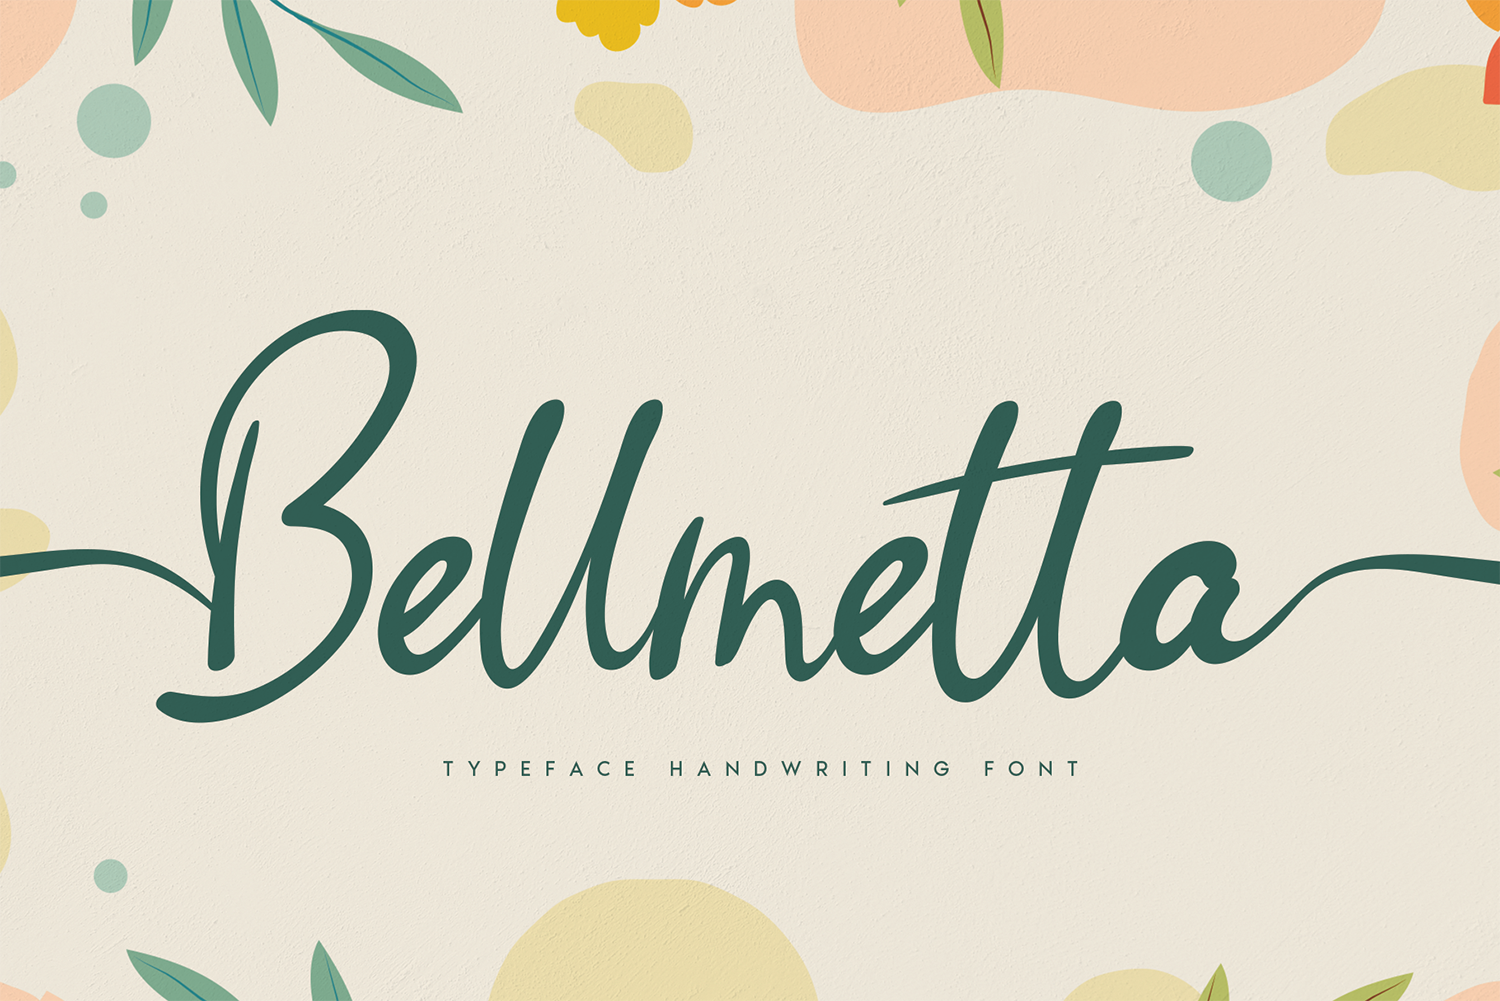 Bellmetta Free Font